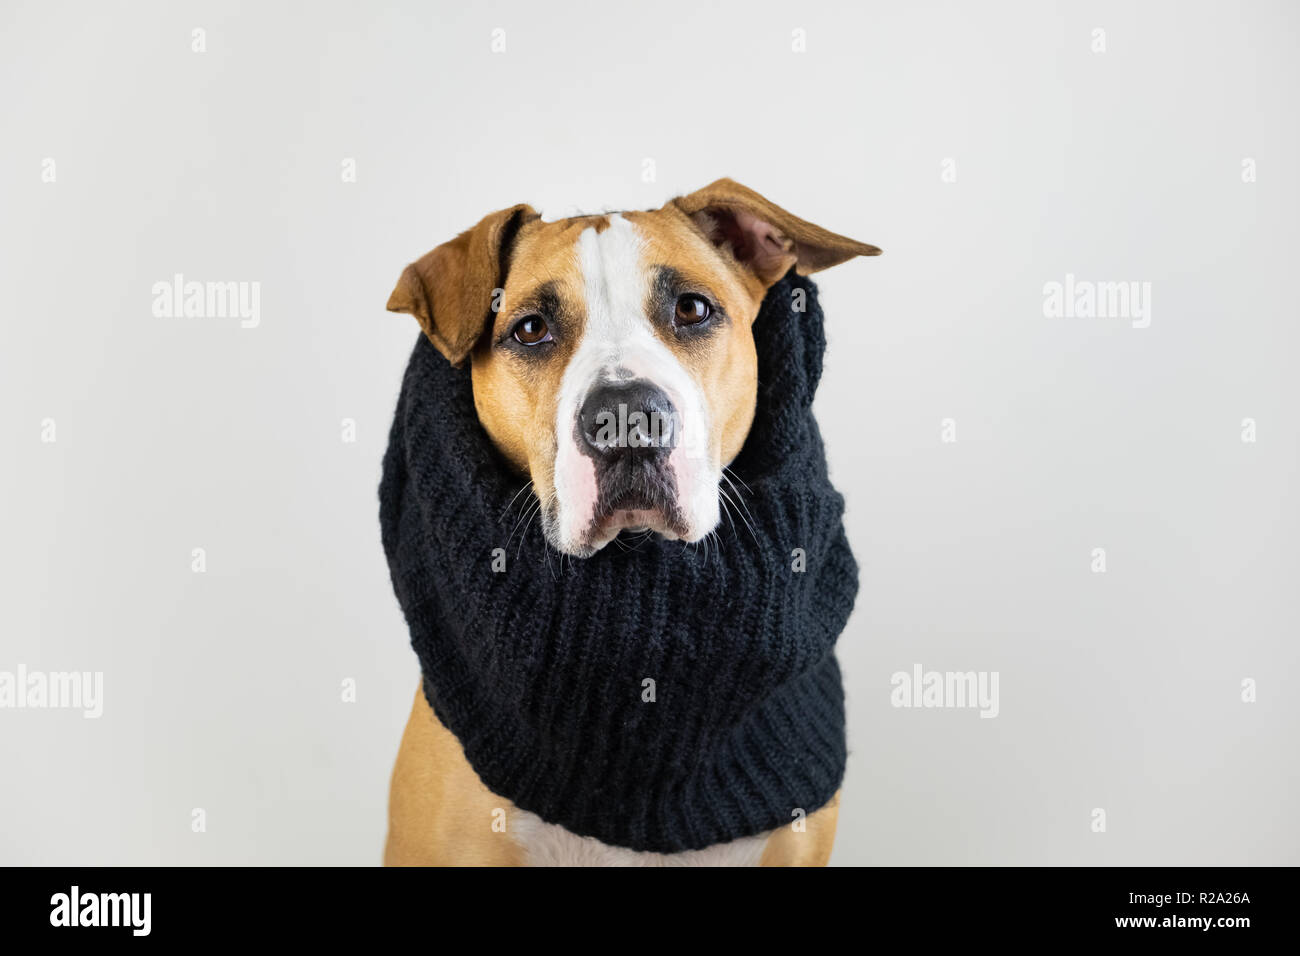 Hund in warme Kleidung Konzept. Cute pitbull Welpen in schwarz Schal im Studio Hintergrund Stockfoto